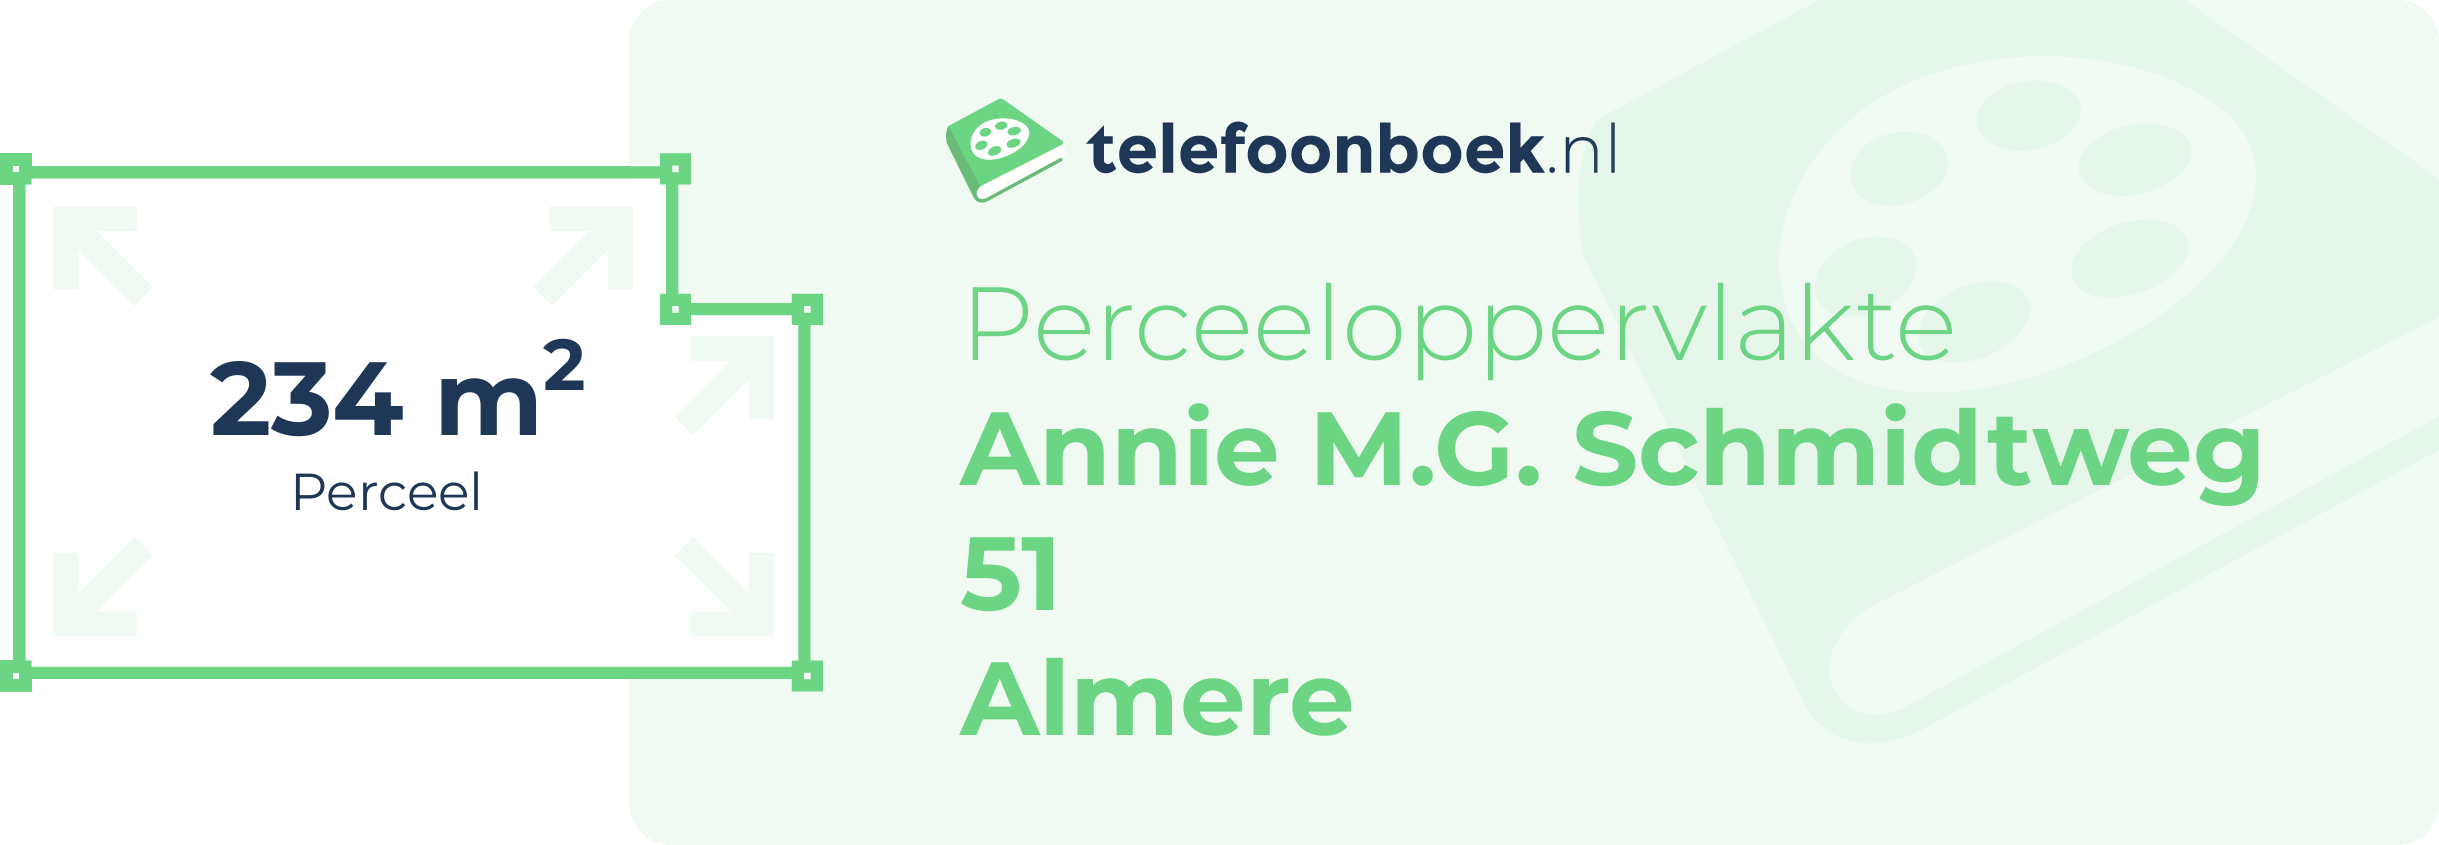 Perceeloppervlakte Annie M.G. Schmidtweg 51 Almere